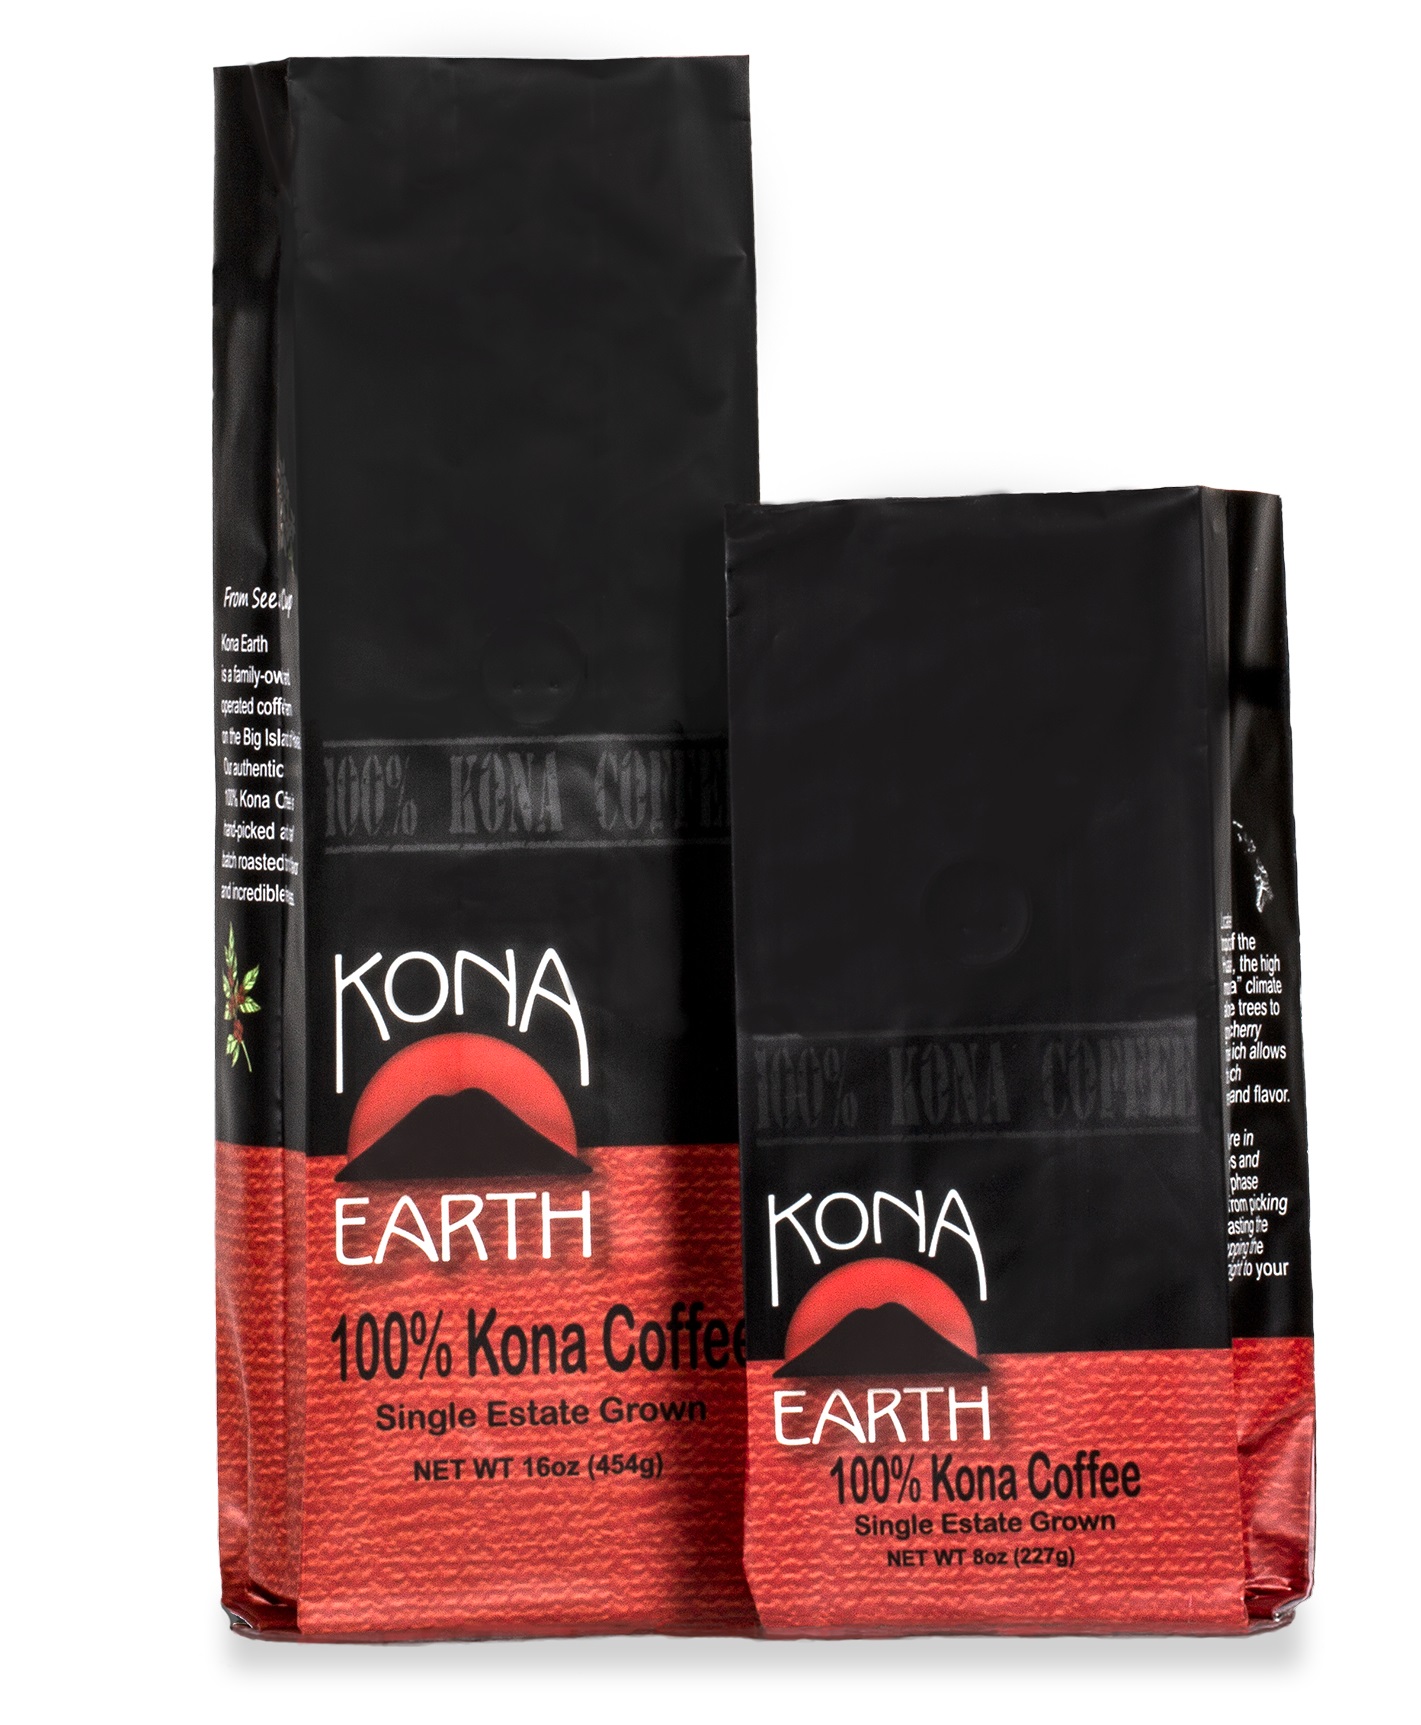 Kona Earth coffee